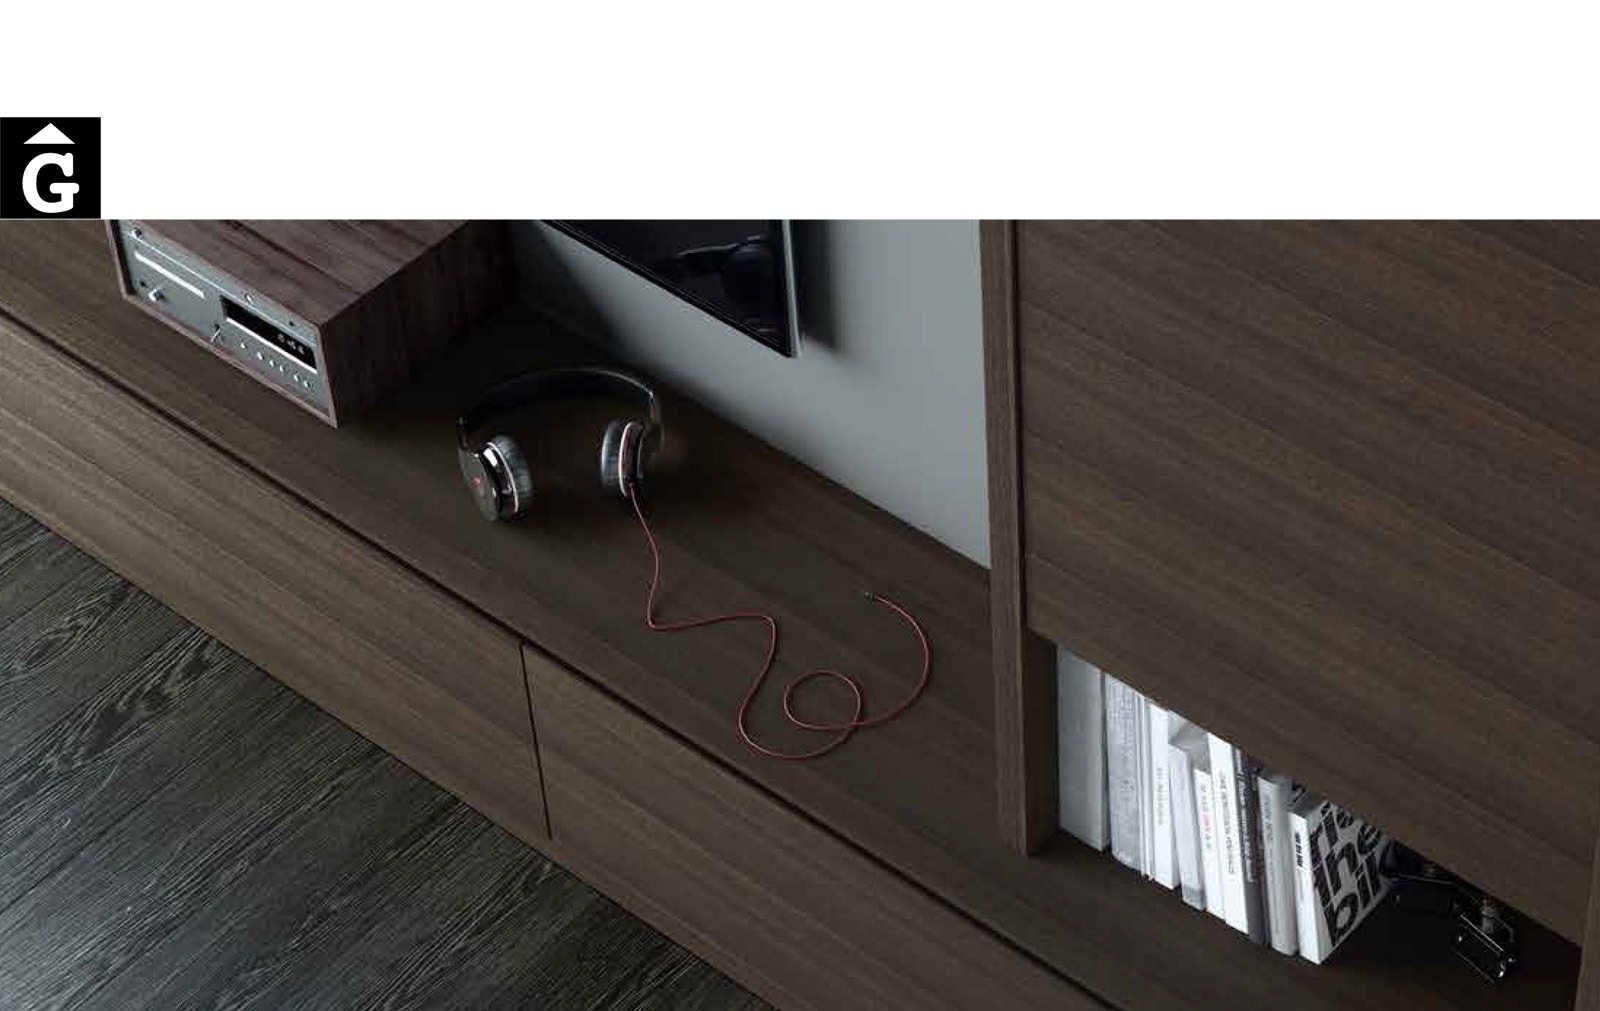 18 0 Area mobles Ciurans per mobles Gifreu programa modular disseny atemporal realitzat amb materials i ferratges de qualitat estil modern minimal